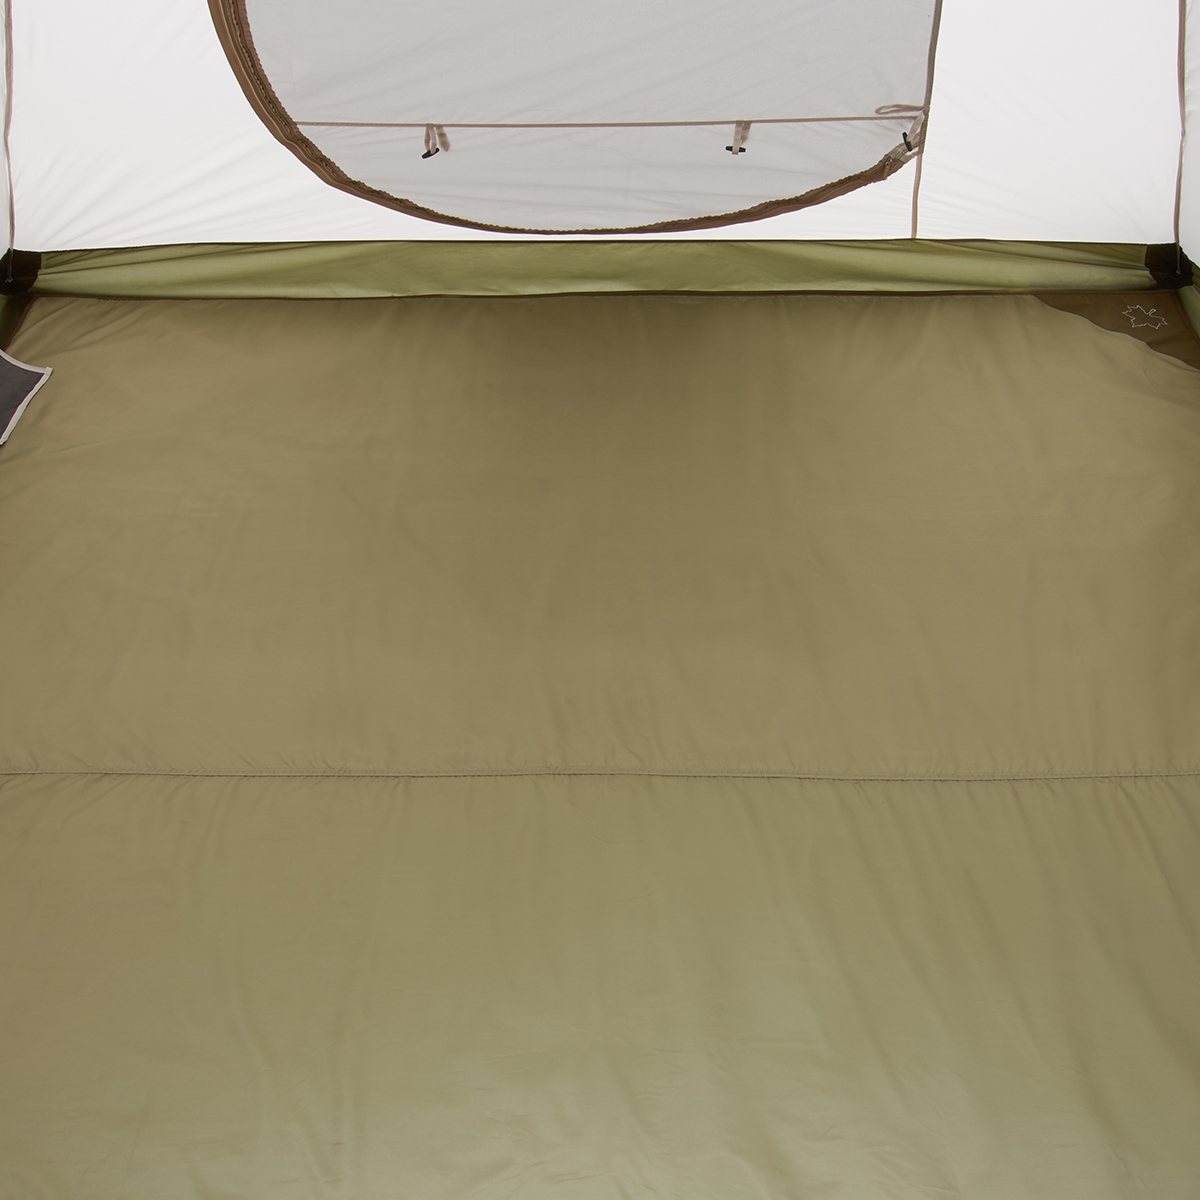 テントぴったり防水マット・XL|ギア|テントアクセサリ|テント 